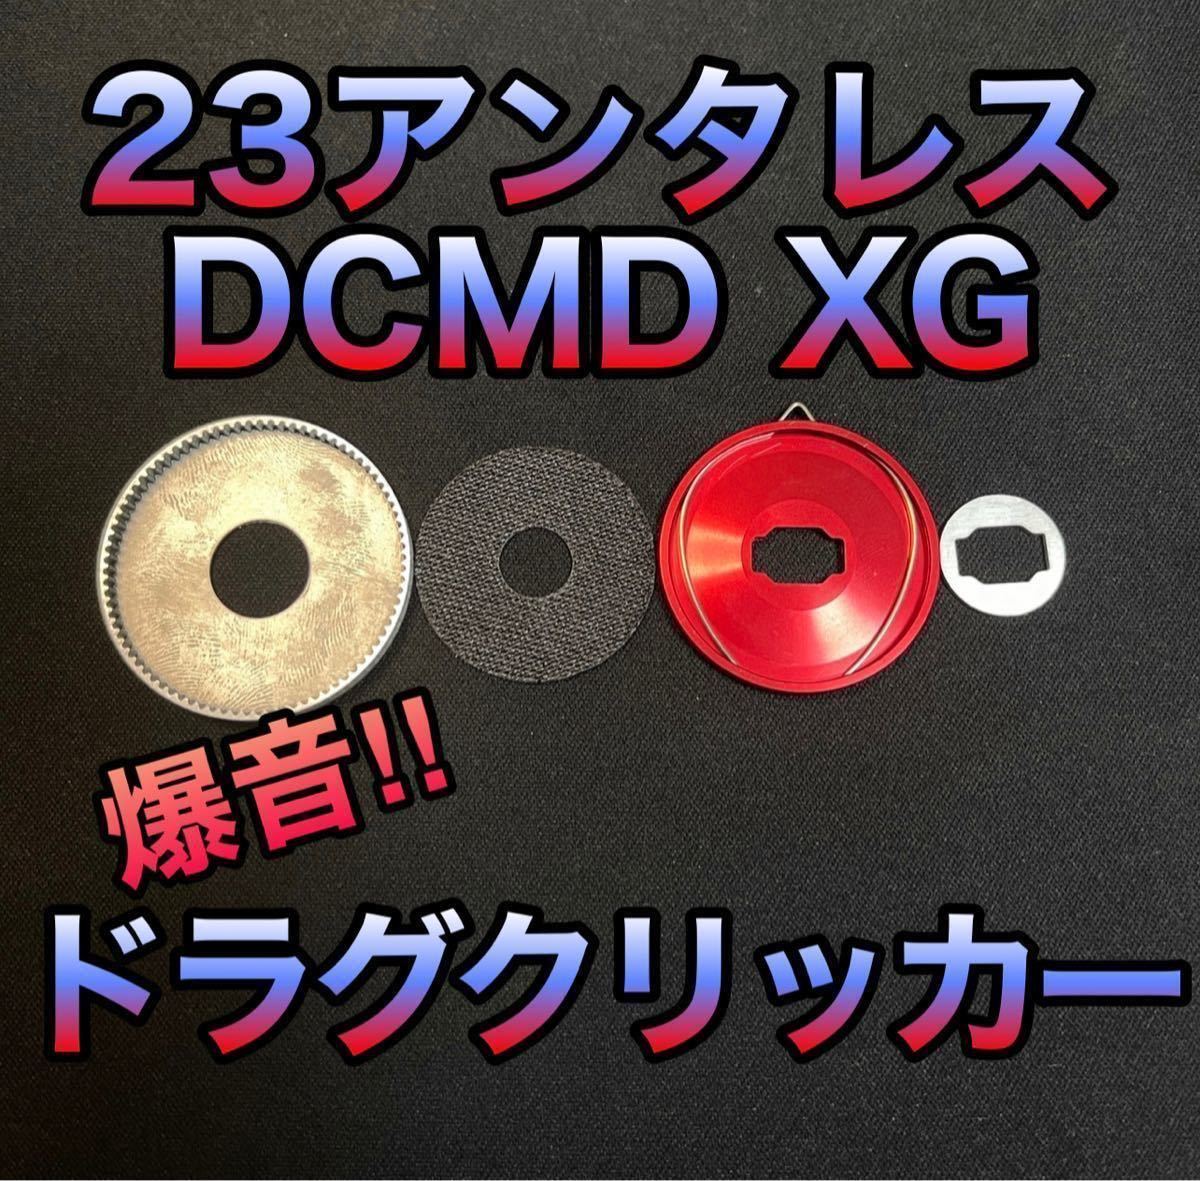 爆音ドラグクリッカー】【シマノ・23アンタレスDCMD XG・左右共通